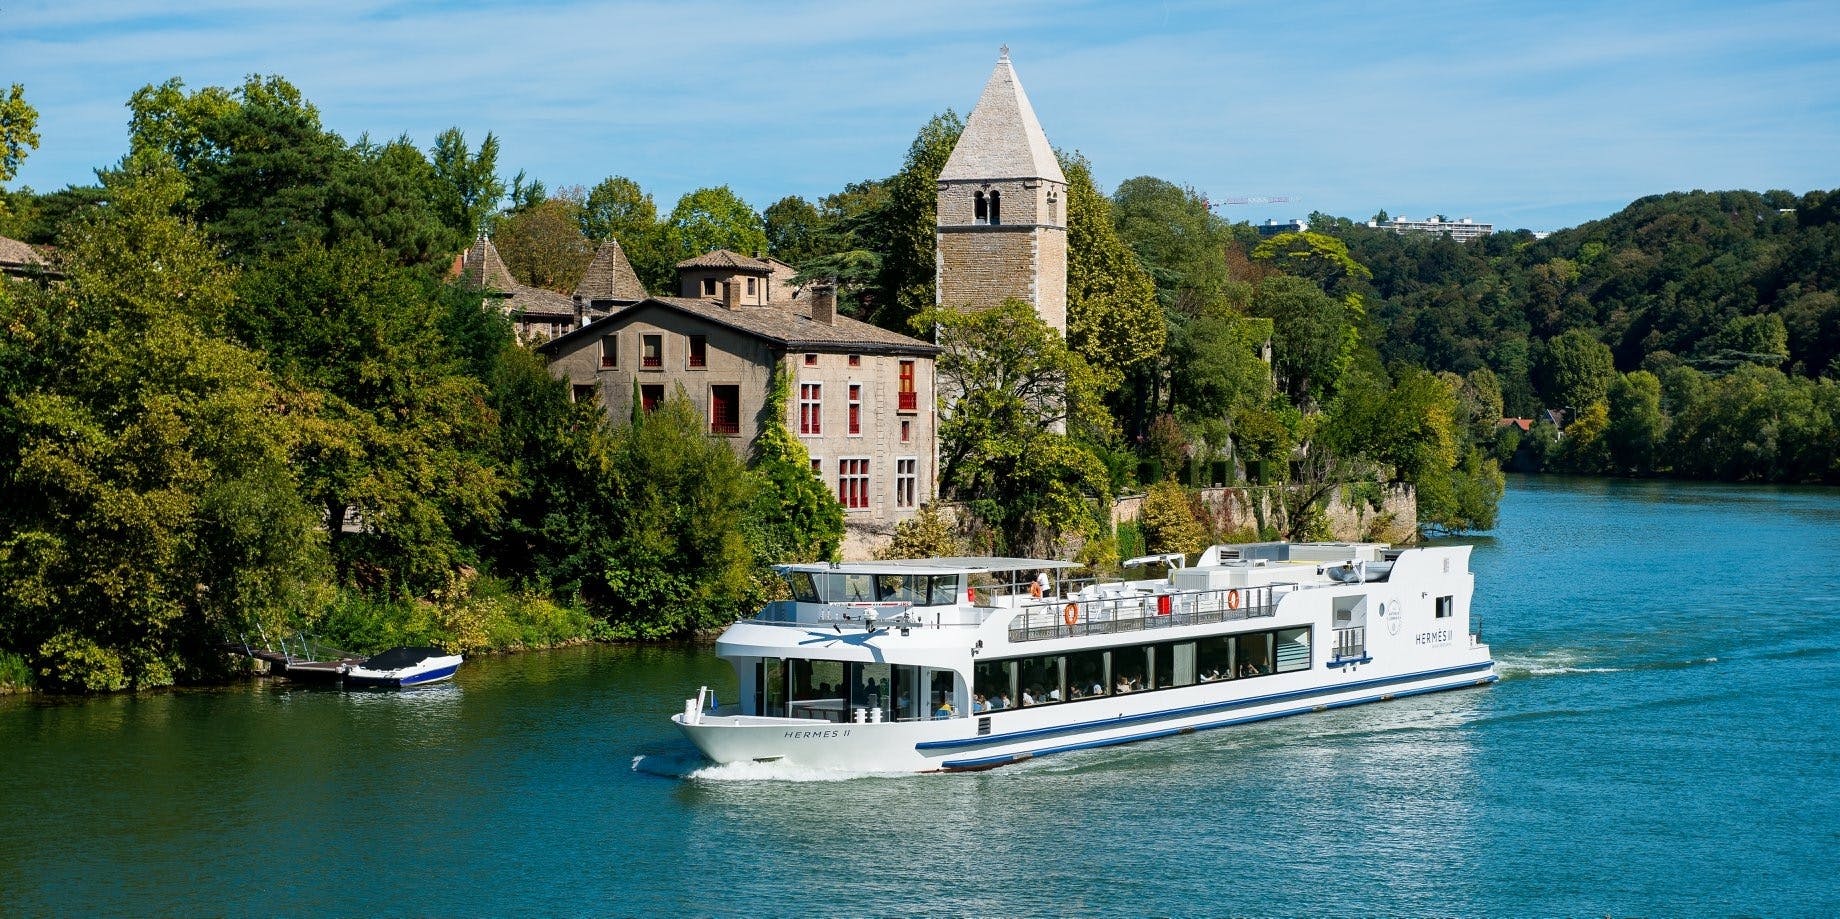 Rejs łodzią restauracyjną Hermès II z kolacją w Lyonie